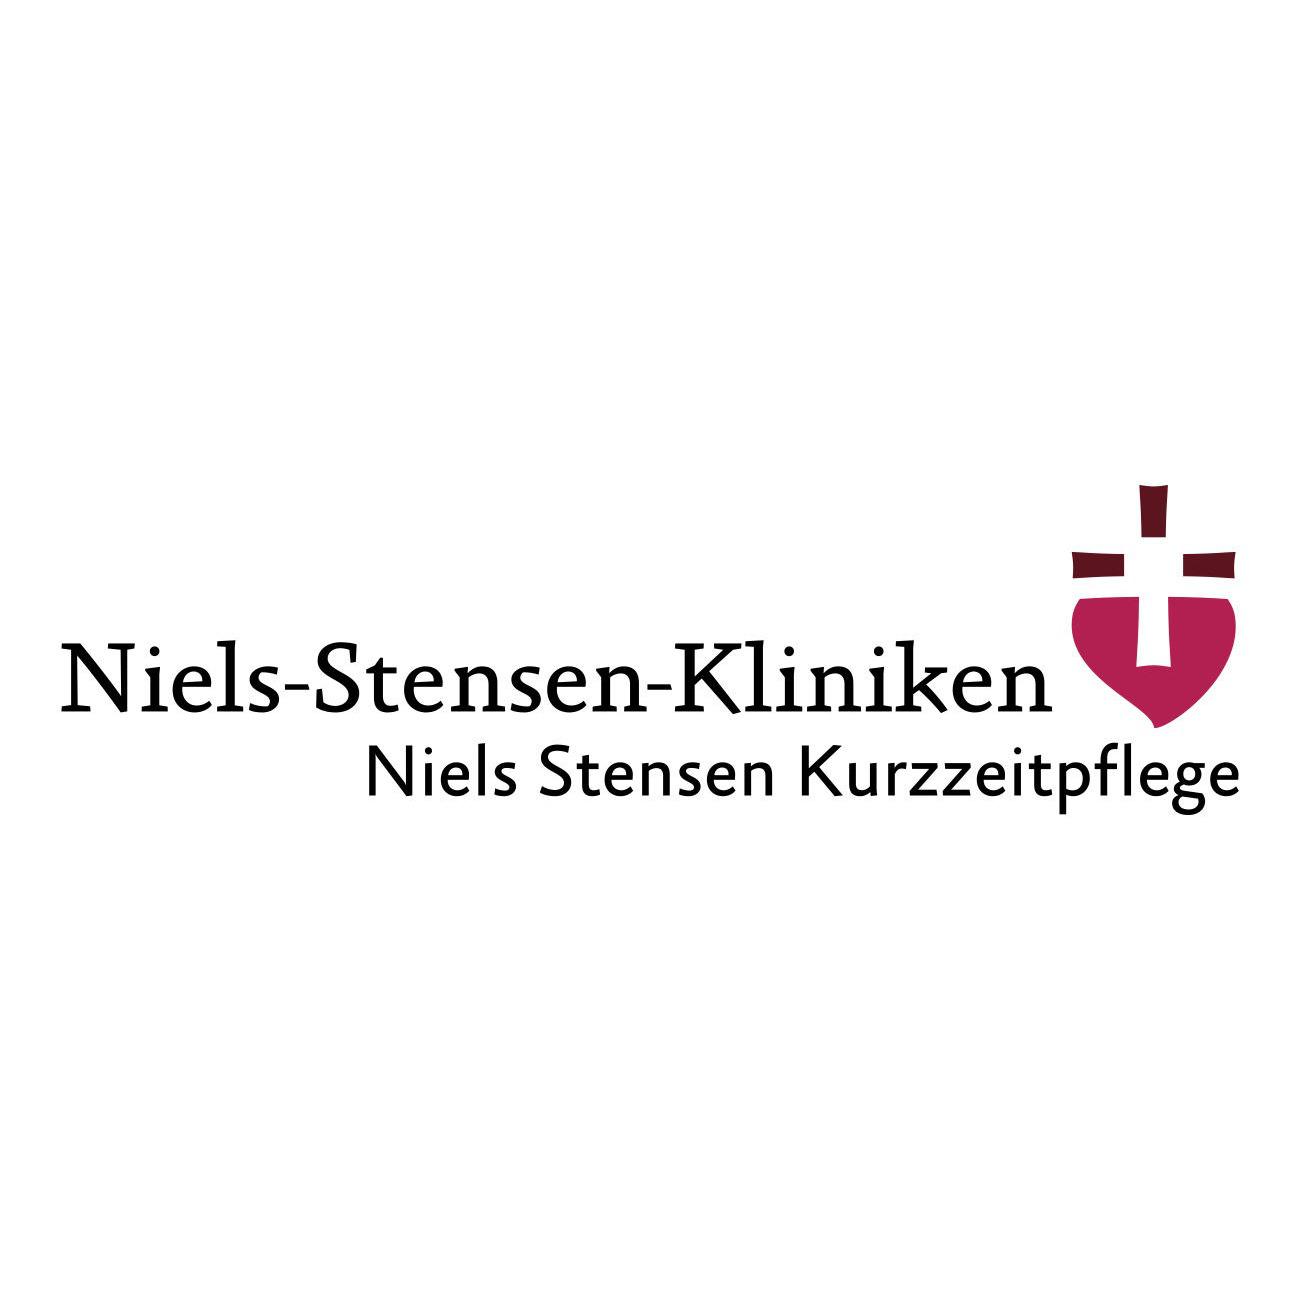 Niels Stensen Kurzzeitpflege Osnabrück in Osnabrück - Logo